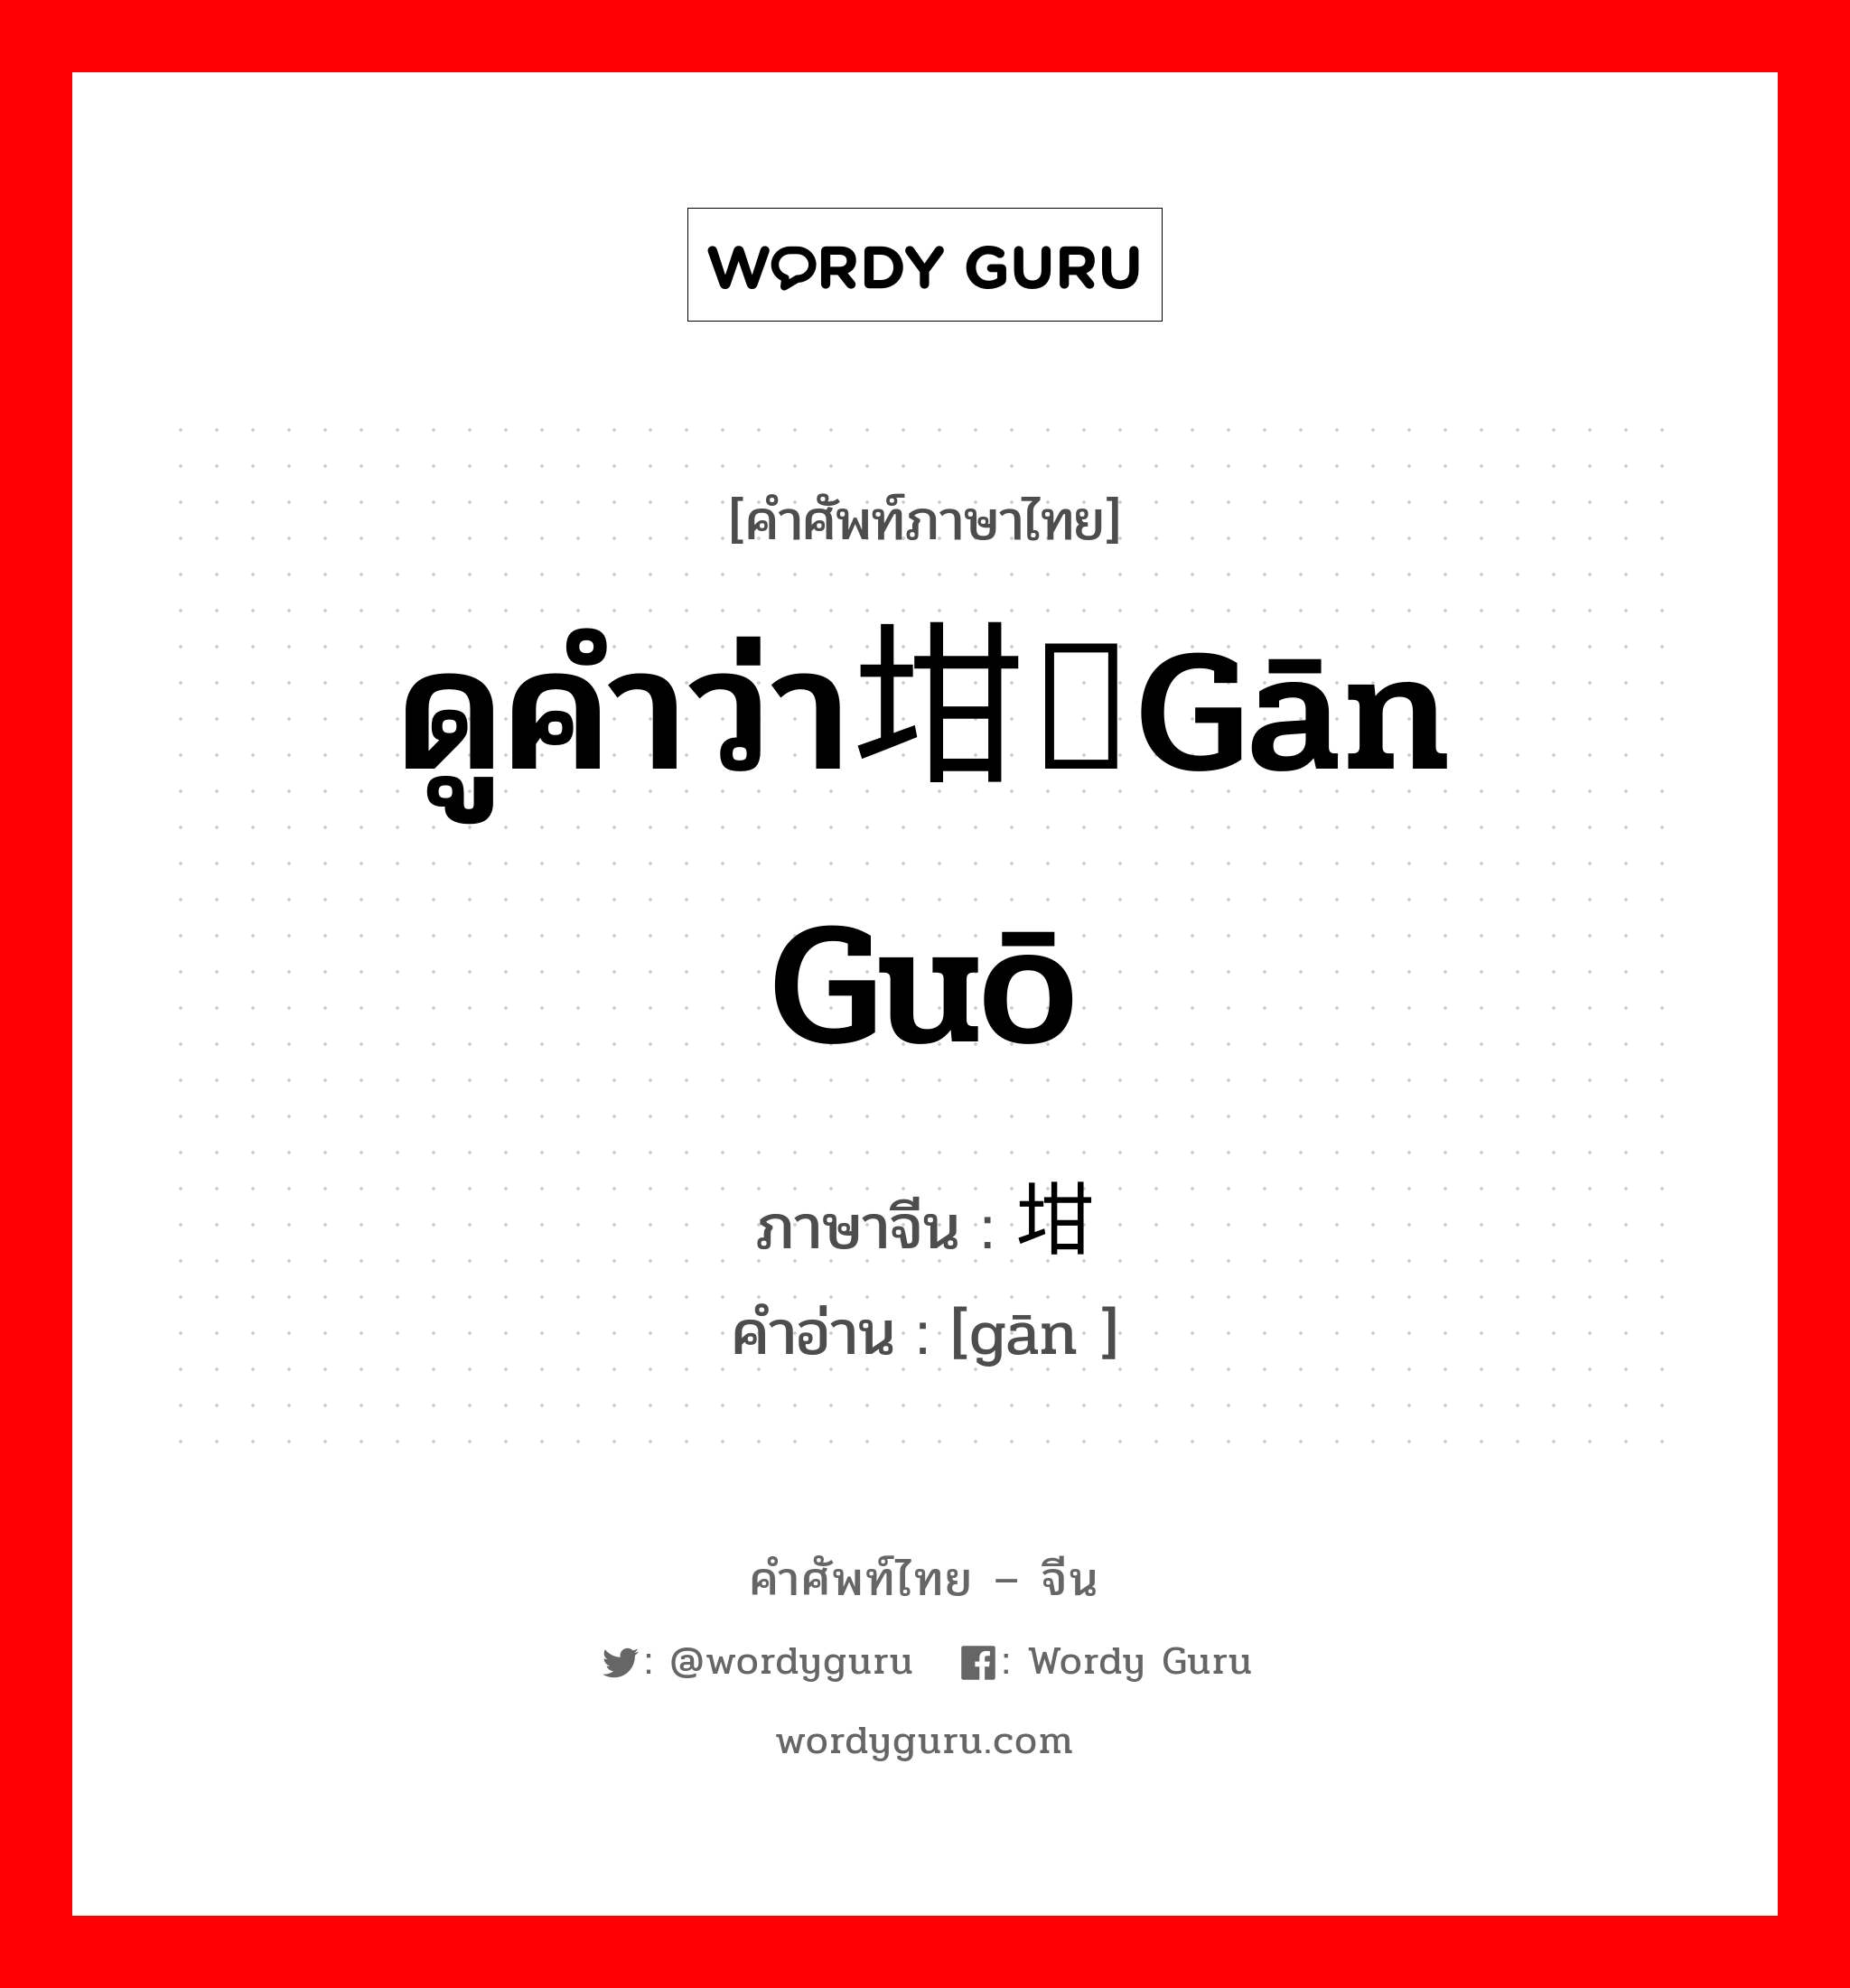 ดูคำว่า坩埚gān guō ภาษาจีนคืออะไร, คำศัพท์ภาษาไทย - จีน ดูคำว่า坩埚gān guō ภาษาจีน 坩 คำอ่าน [gān ]